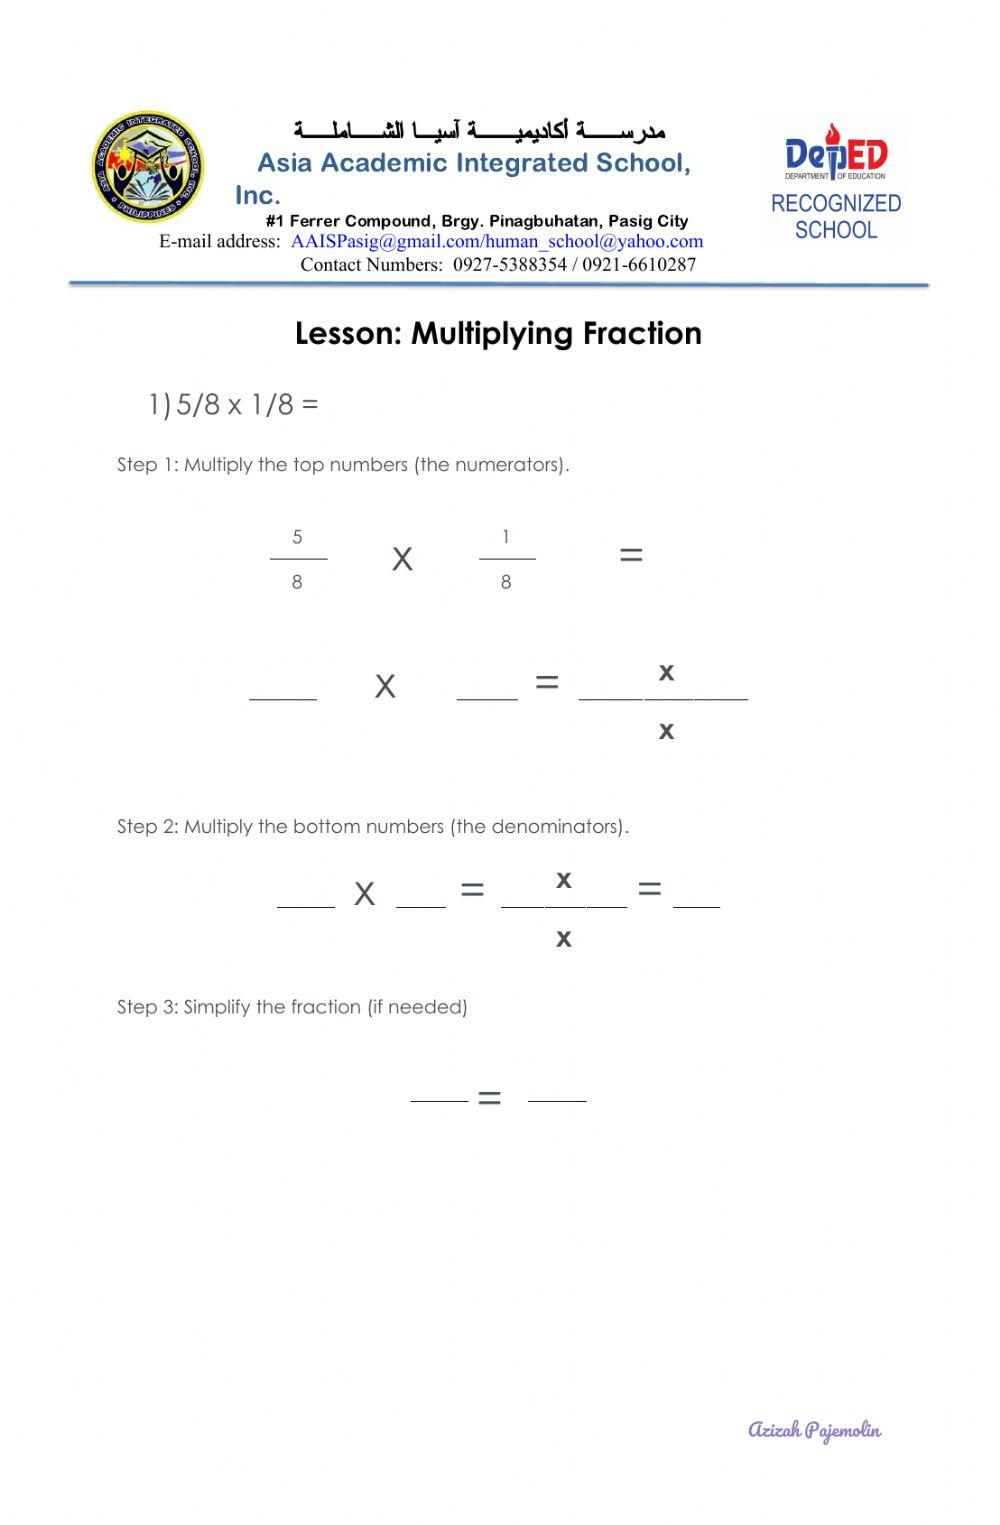 Worksheet on Multiplying Fraction